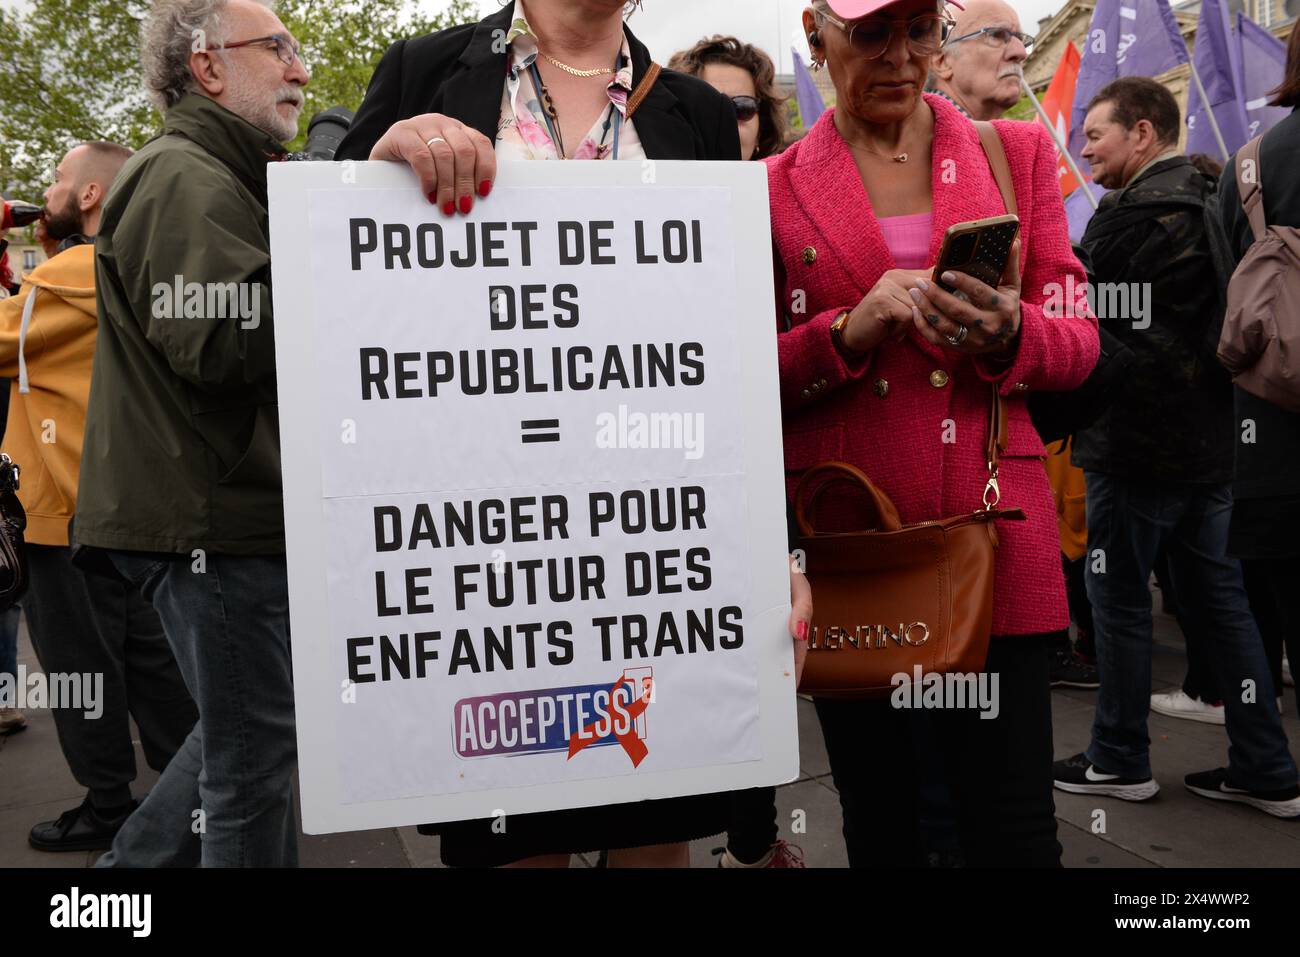 Beaucoup de monde contre la transphobie et le projet de loi des républicains sont venus protester dans la bonne humeur Place de la république à Paris Foto Stock